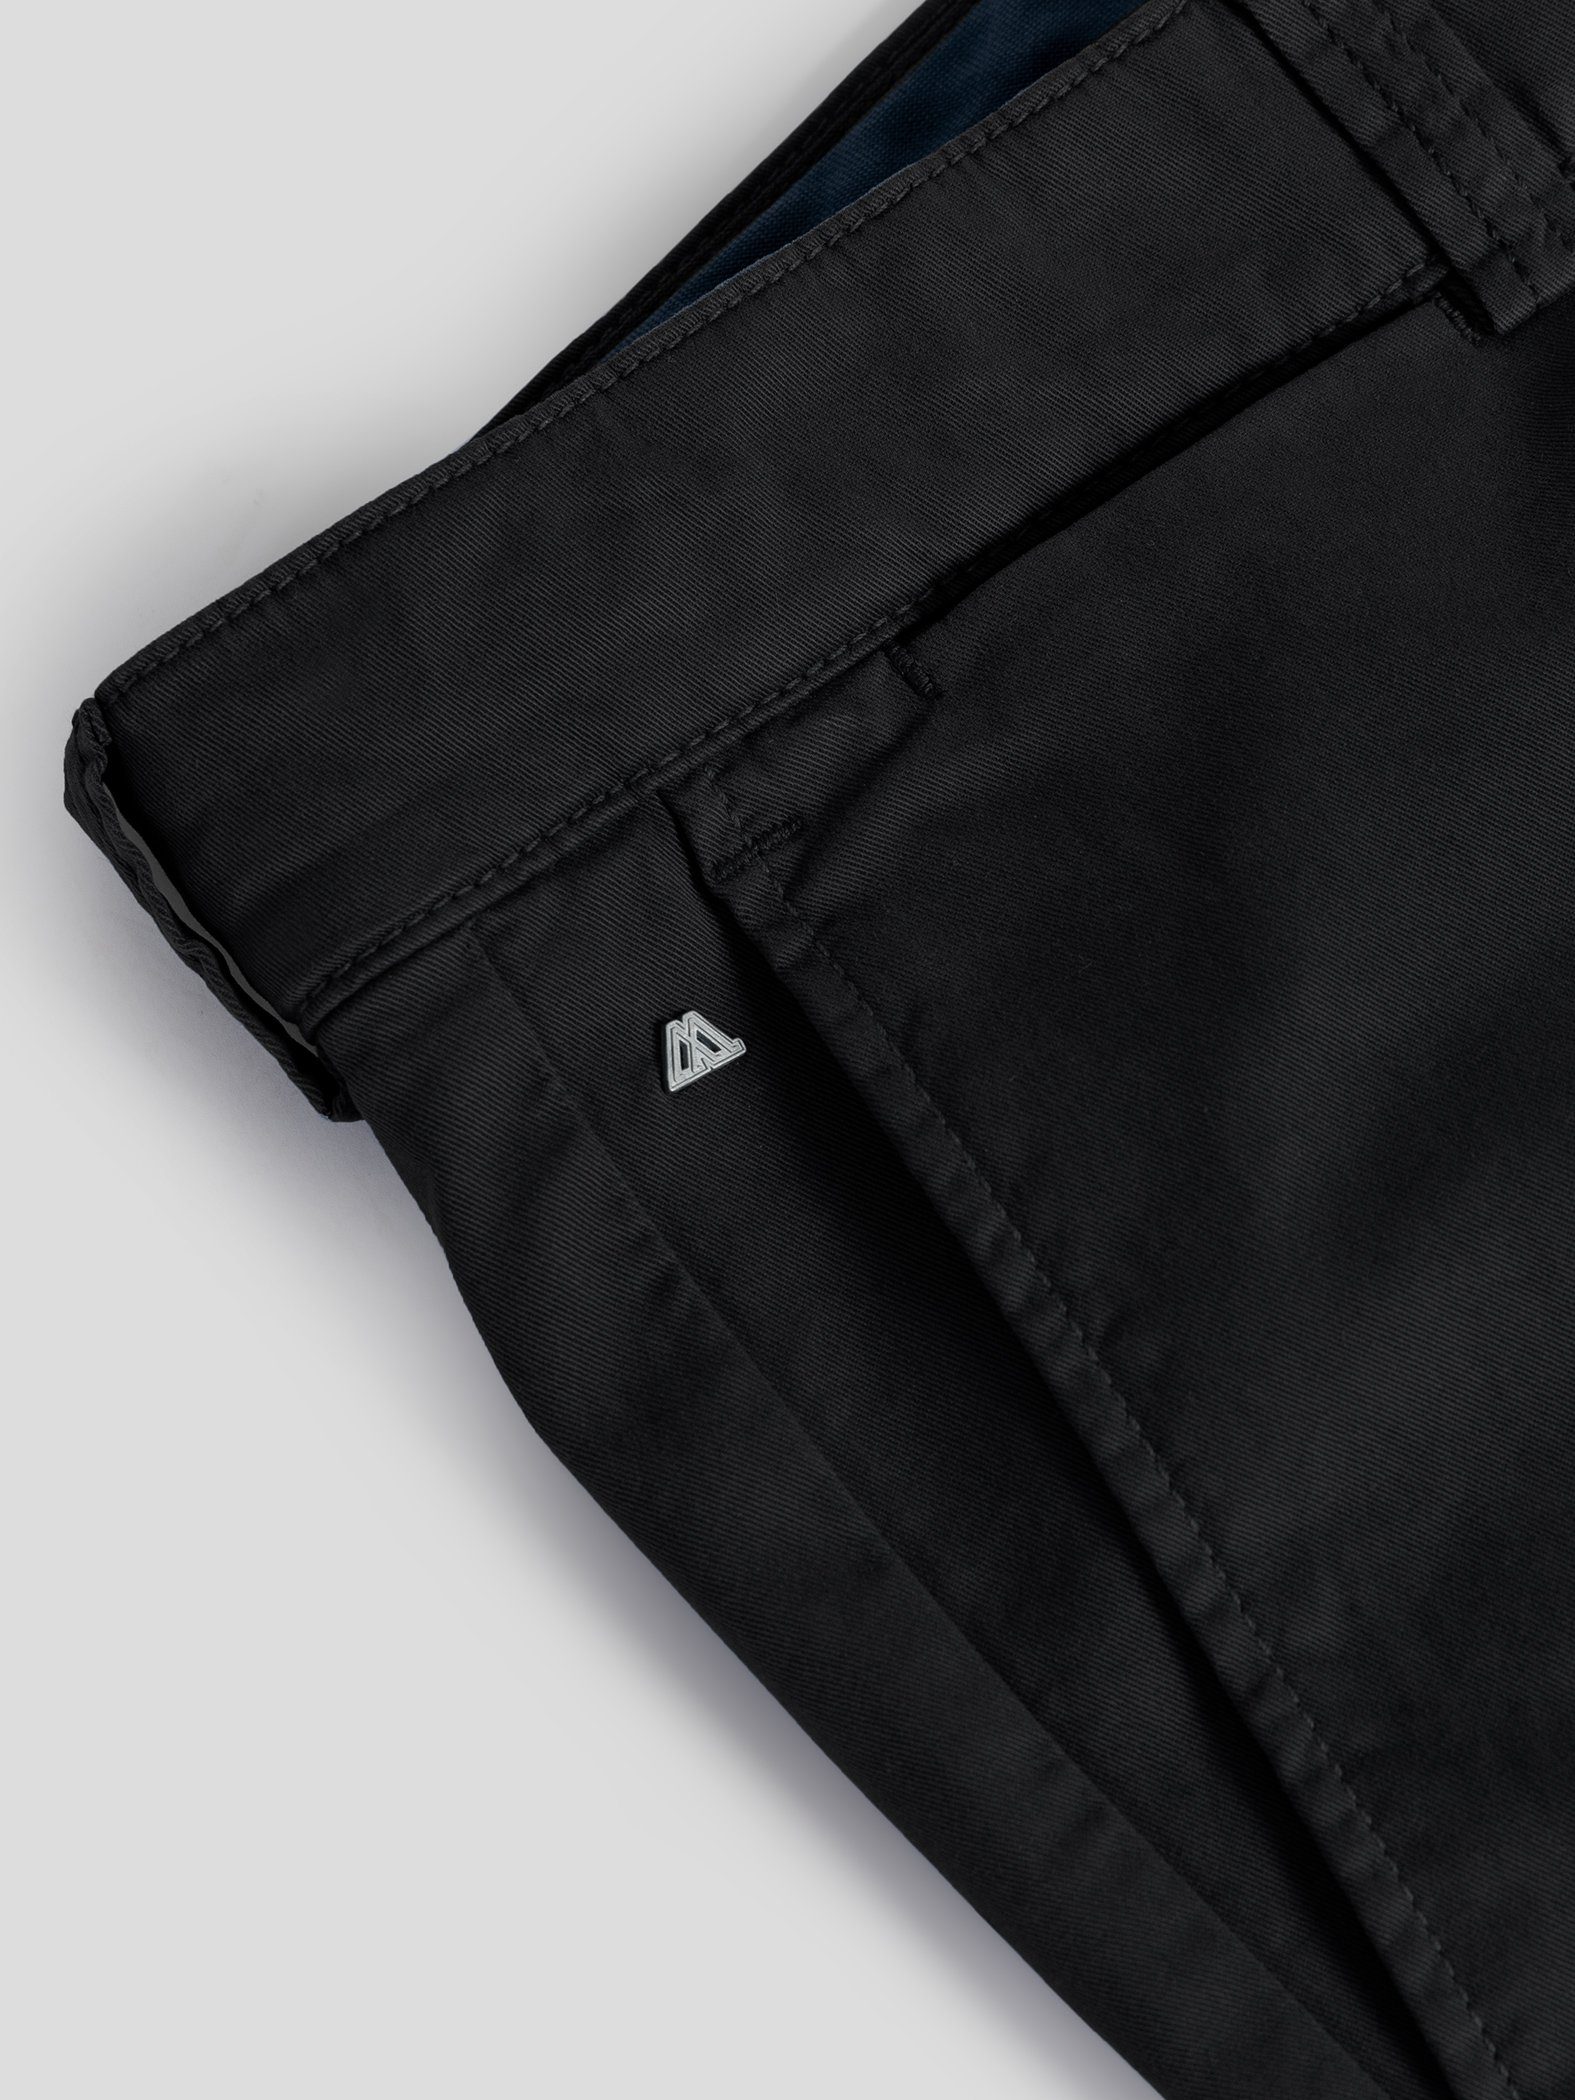 Shorts Bund, Schwarz GOTS-zertifiziert elastischem TwoMates Shorts mit Farbauswahl,